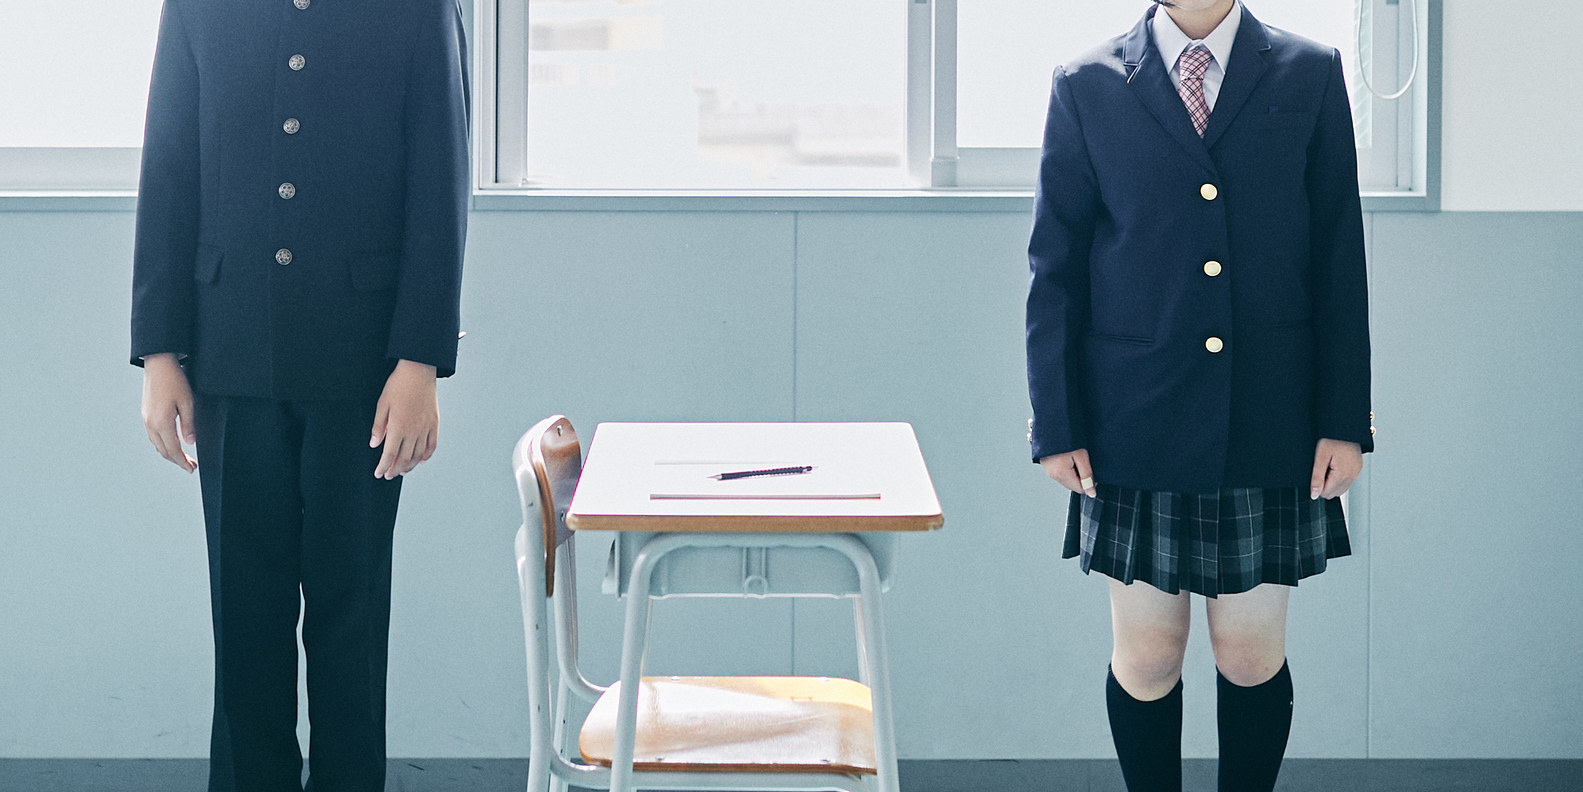 血ヘドを吐く思いでスカートを着ていた 高校生が変えたい学校の 現状